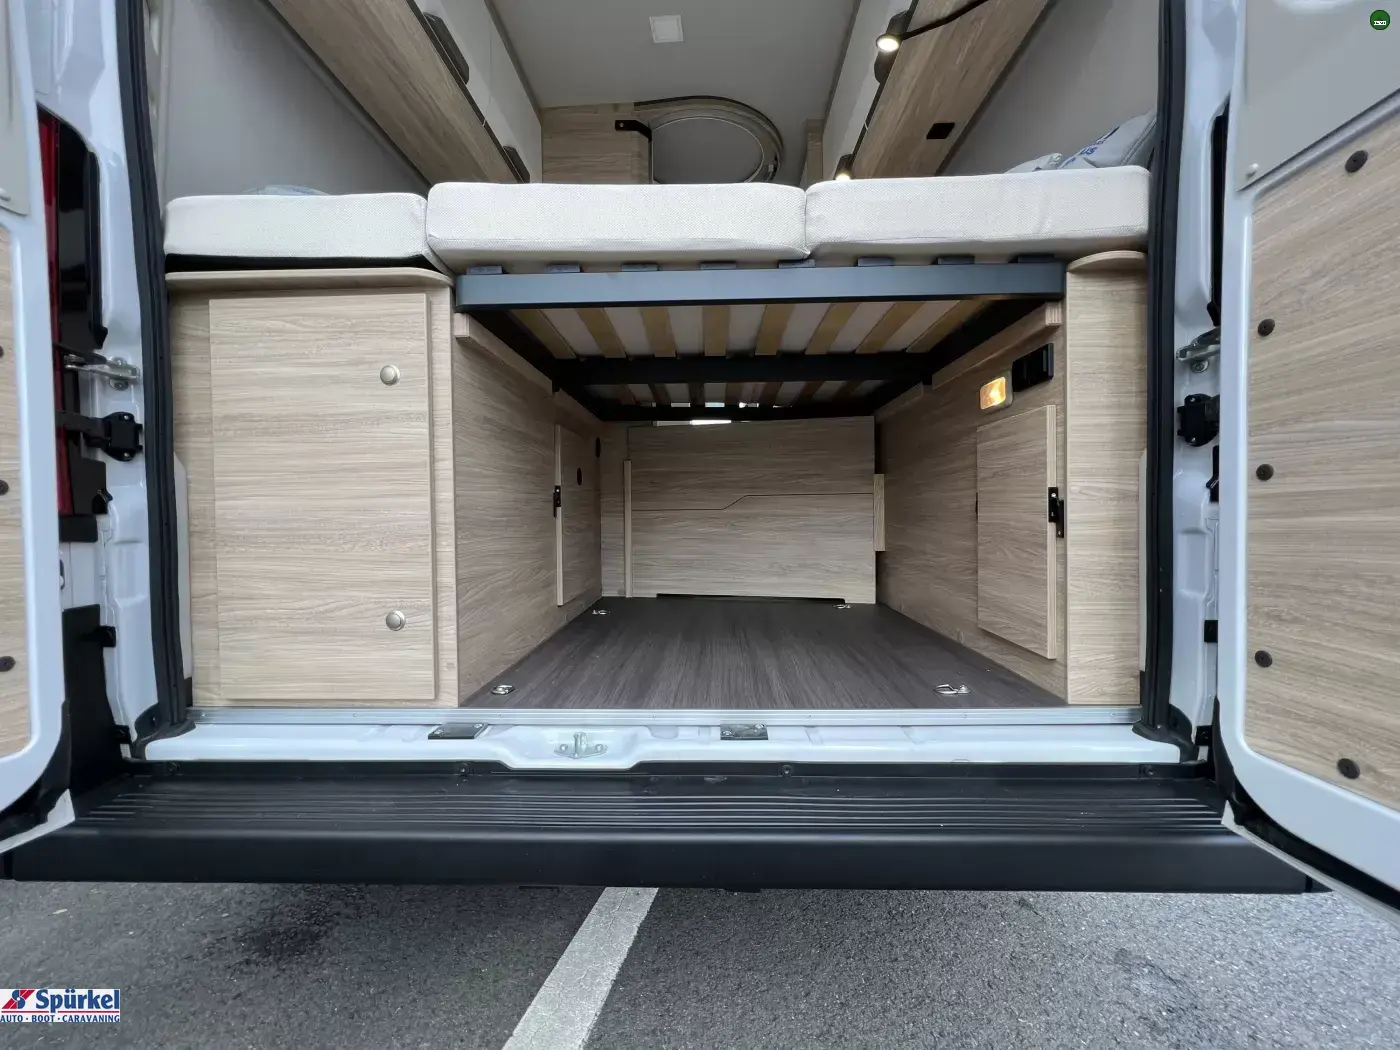 Knaus BoxStar 540 ROAD 60 YEARS als Campervan in Bochum bei   von Auto Spürkel GmbH & Co. KG für 70.980 € zu verkaufen